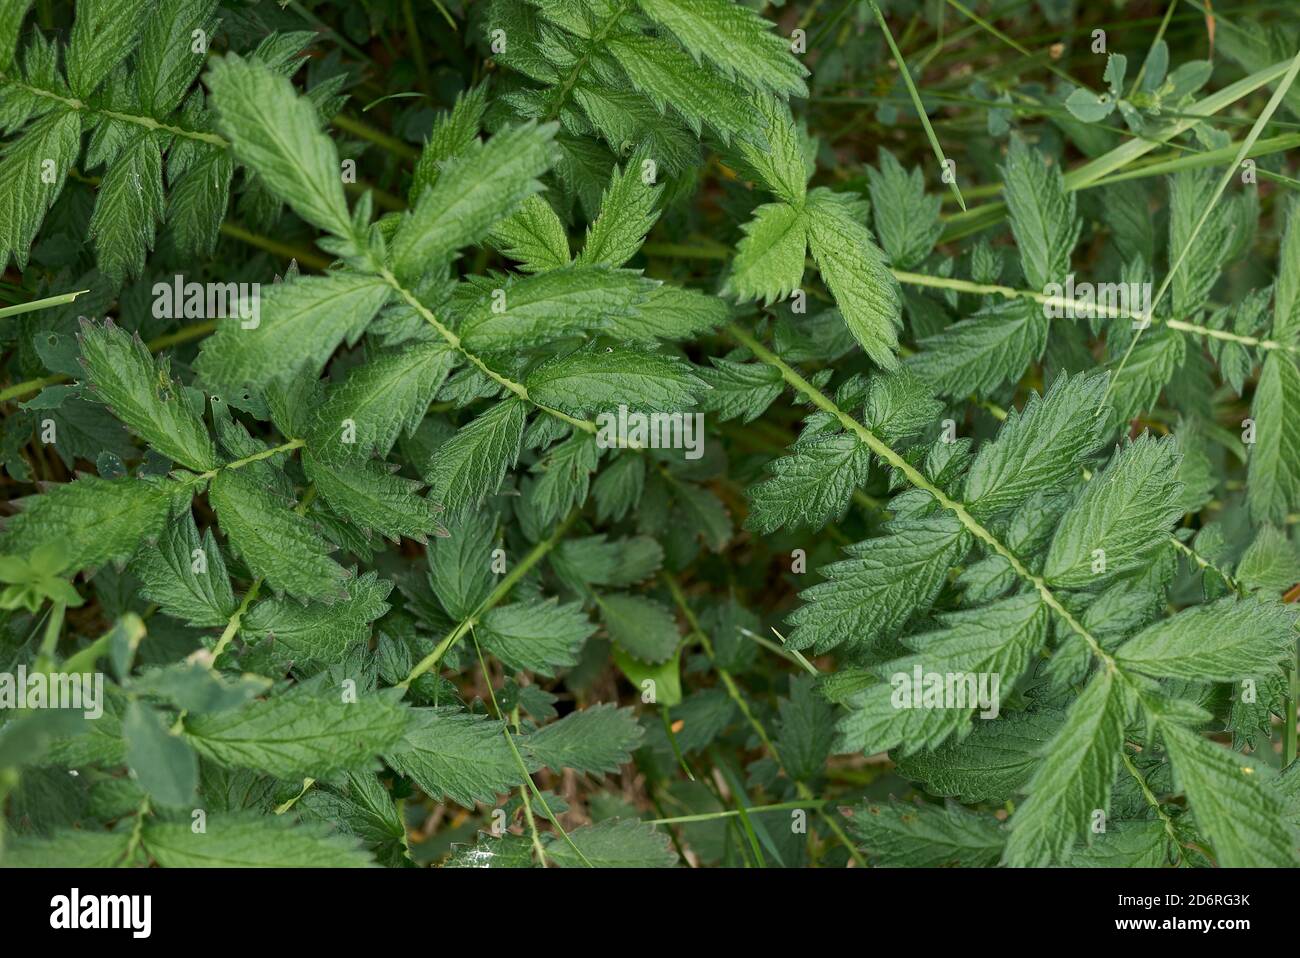 Agrimonia eupatoria fresh green leaves Stock Photo